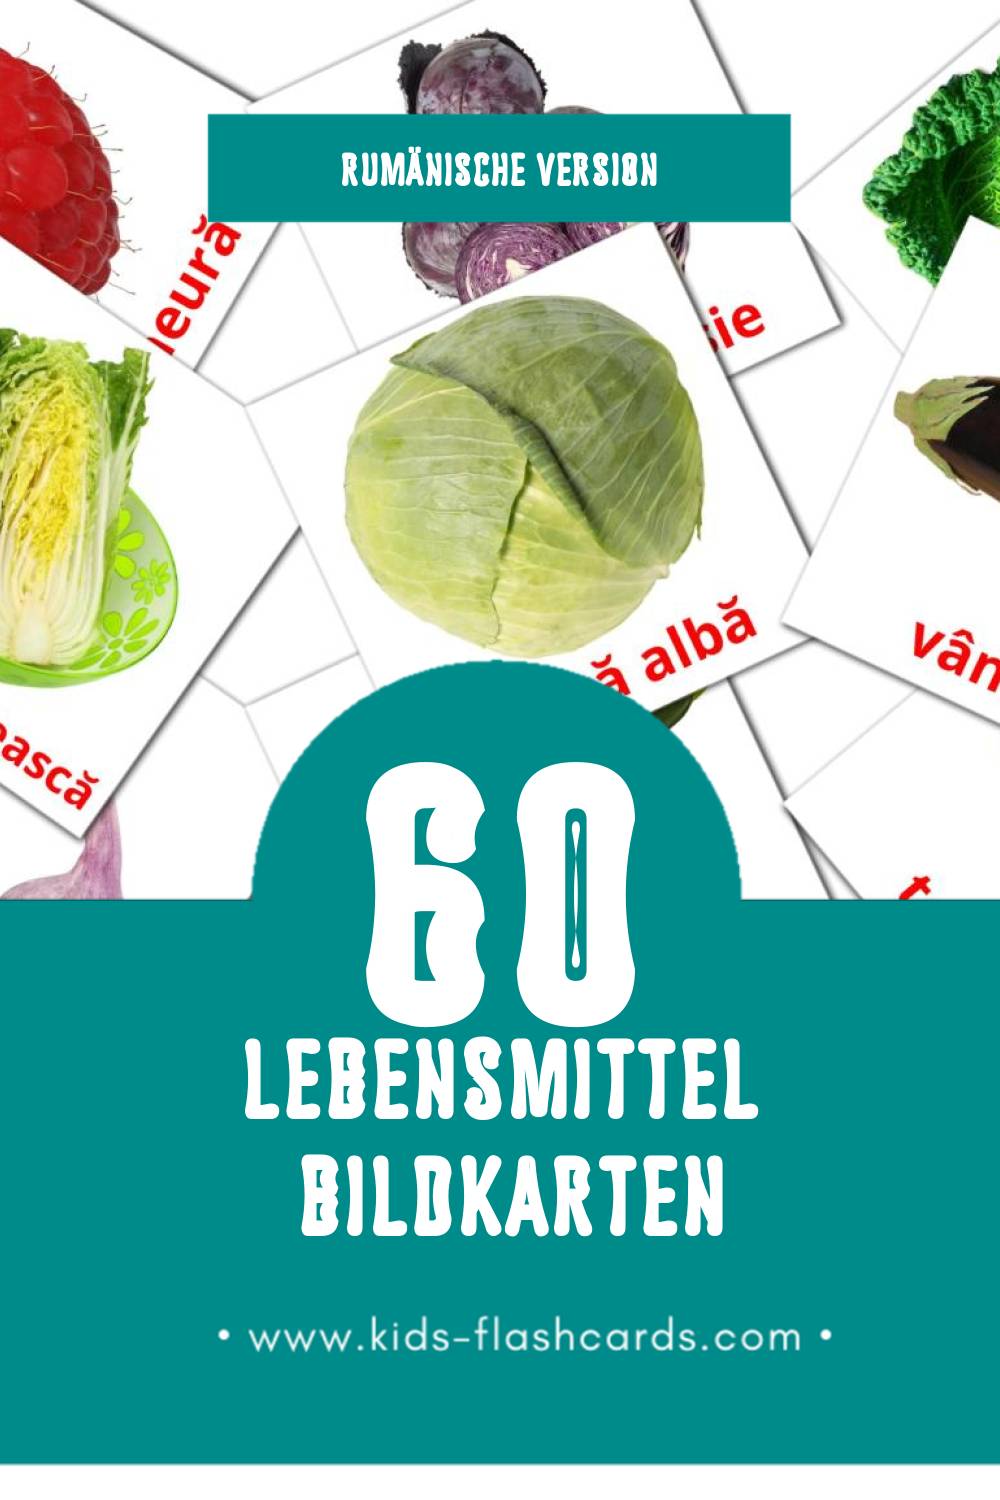 Visual Alimente Flashcards für Kleinkinder (60 Karten in Rumänisch)